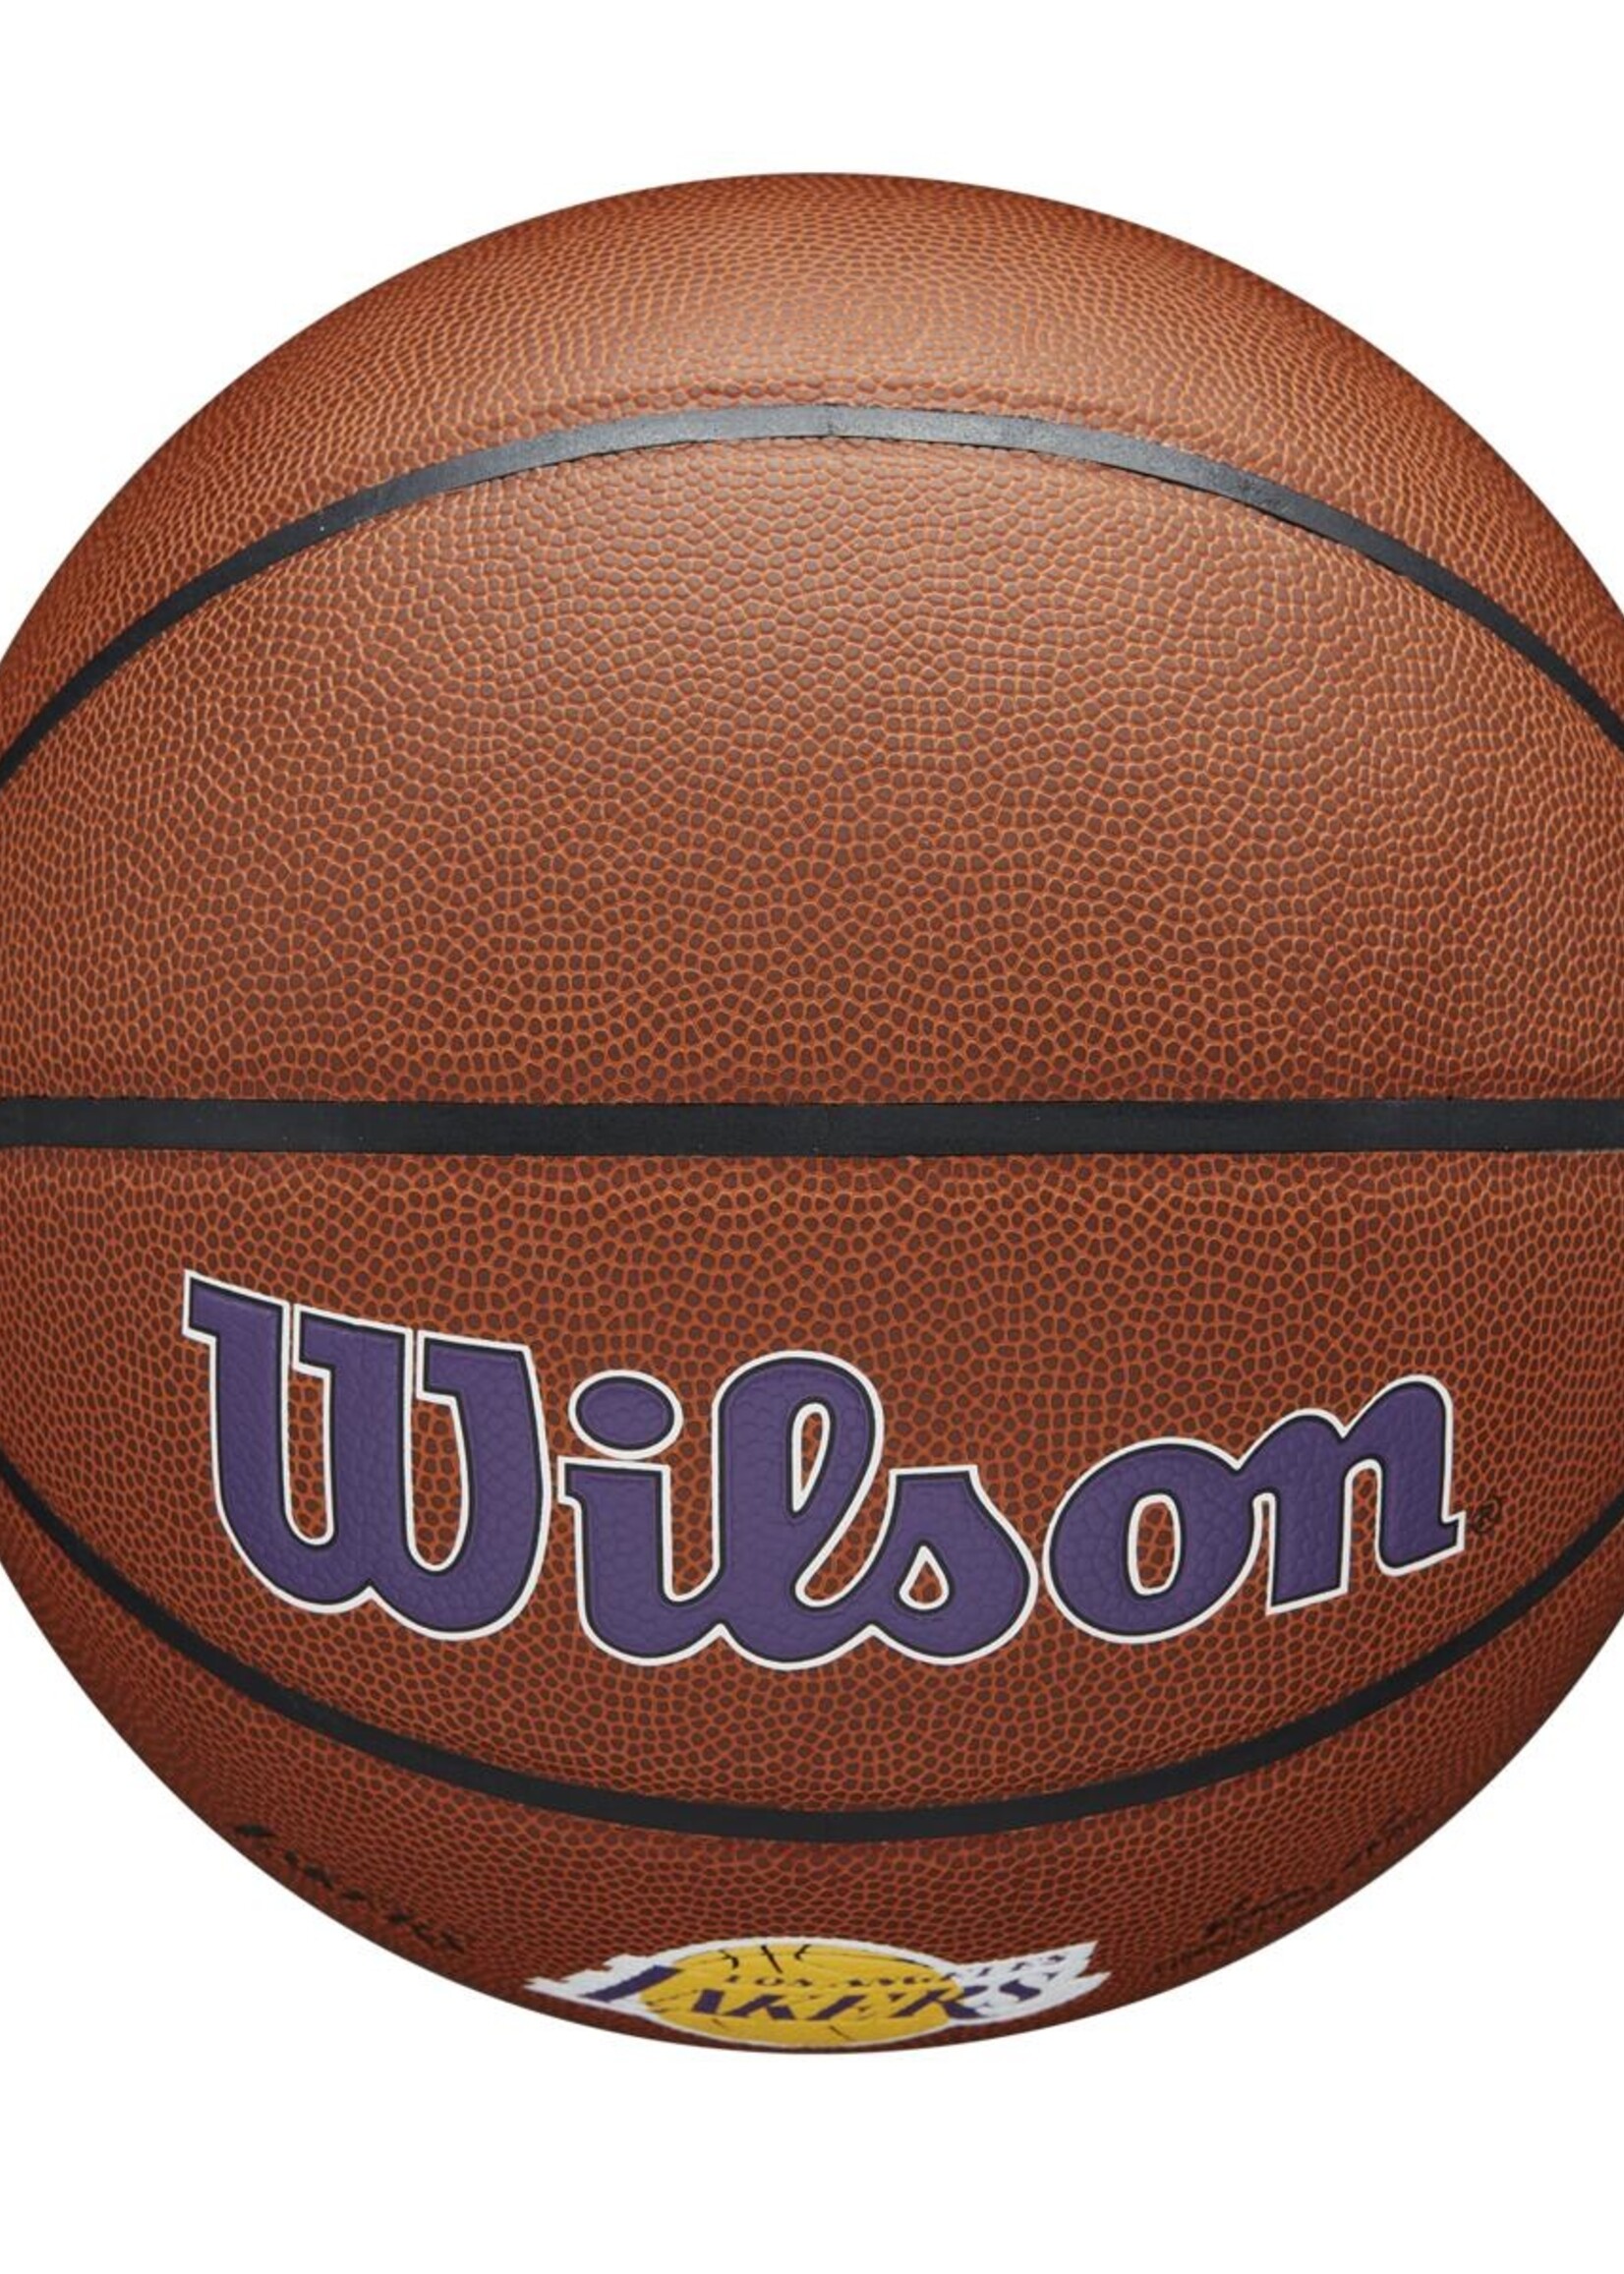 Wilson Wilson NBA LA LAKERS Composite Indoor / Outdoor Basketbal (7)